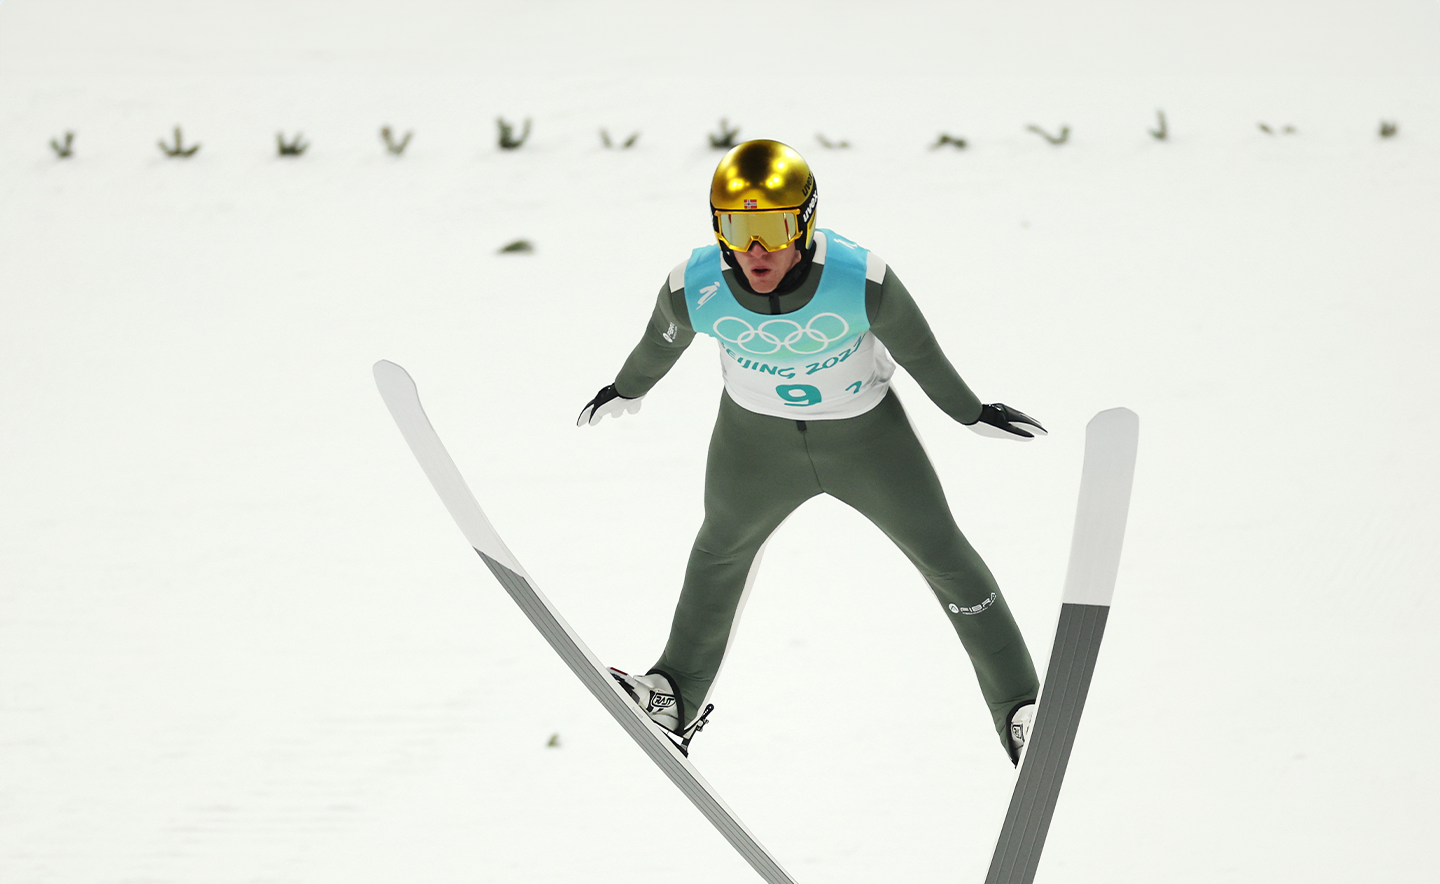 ZHANGJIAKOU, CHINE - 14 FÉVRIER : Daniel Andre Tande de l'équipe norvégienne participe à l'épreuve de saut à ski pour hommes lors de la 10e journée des Jeux olympiques d'hiver de Pékin 2022 au Centre national de saut à ski le 14 février 2022 à Zhangjiakou, en Chine. (Photo par Maja Hitij/Getty Images)